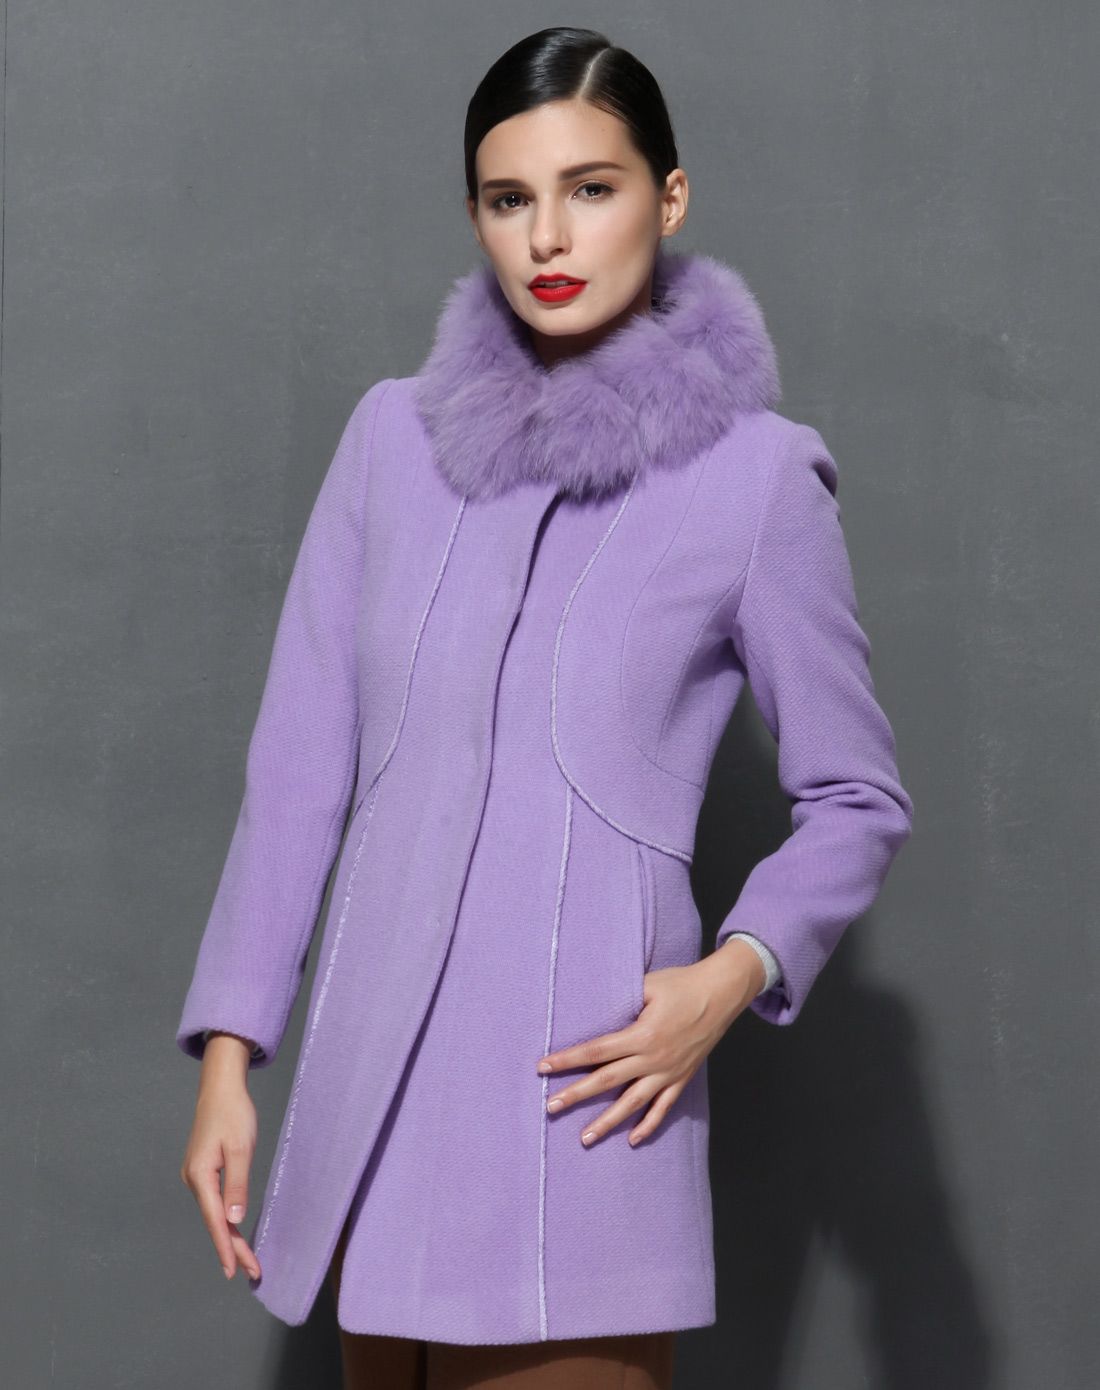 女装香芋紫简洁大气层次分明大衣